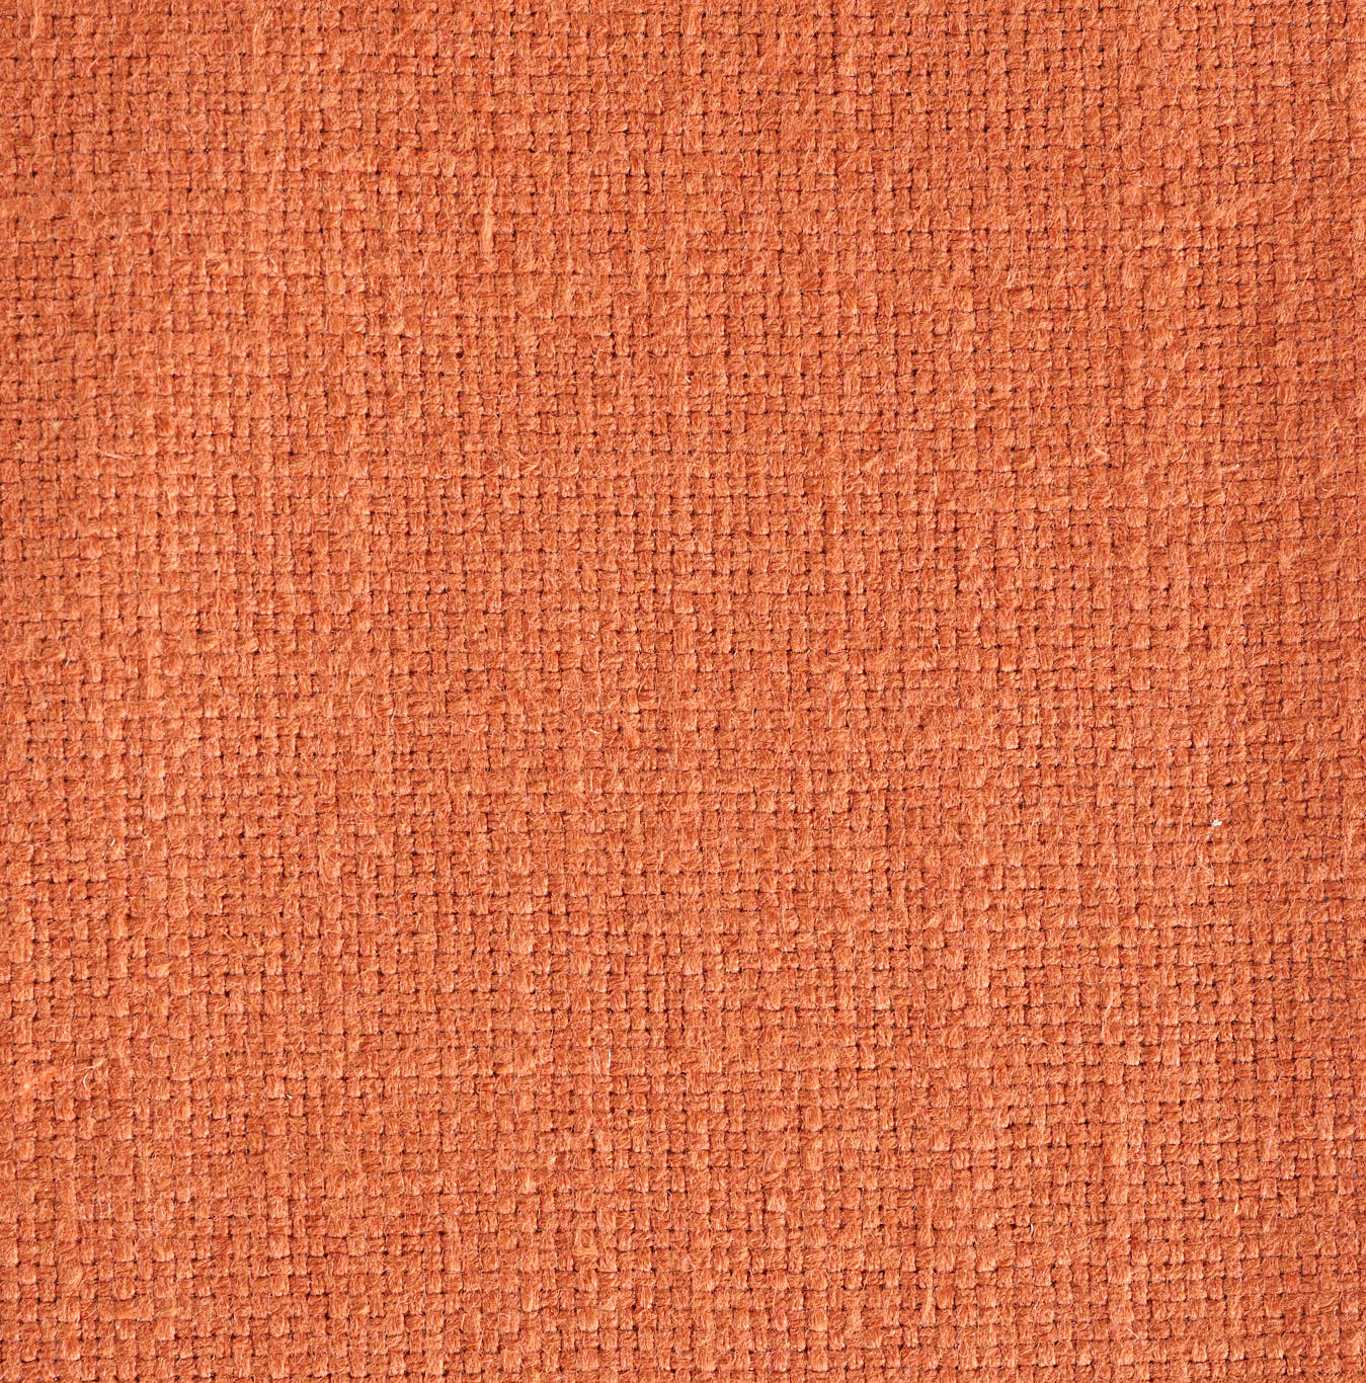 Tuscany II Rowan Berry Fabric by SAN